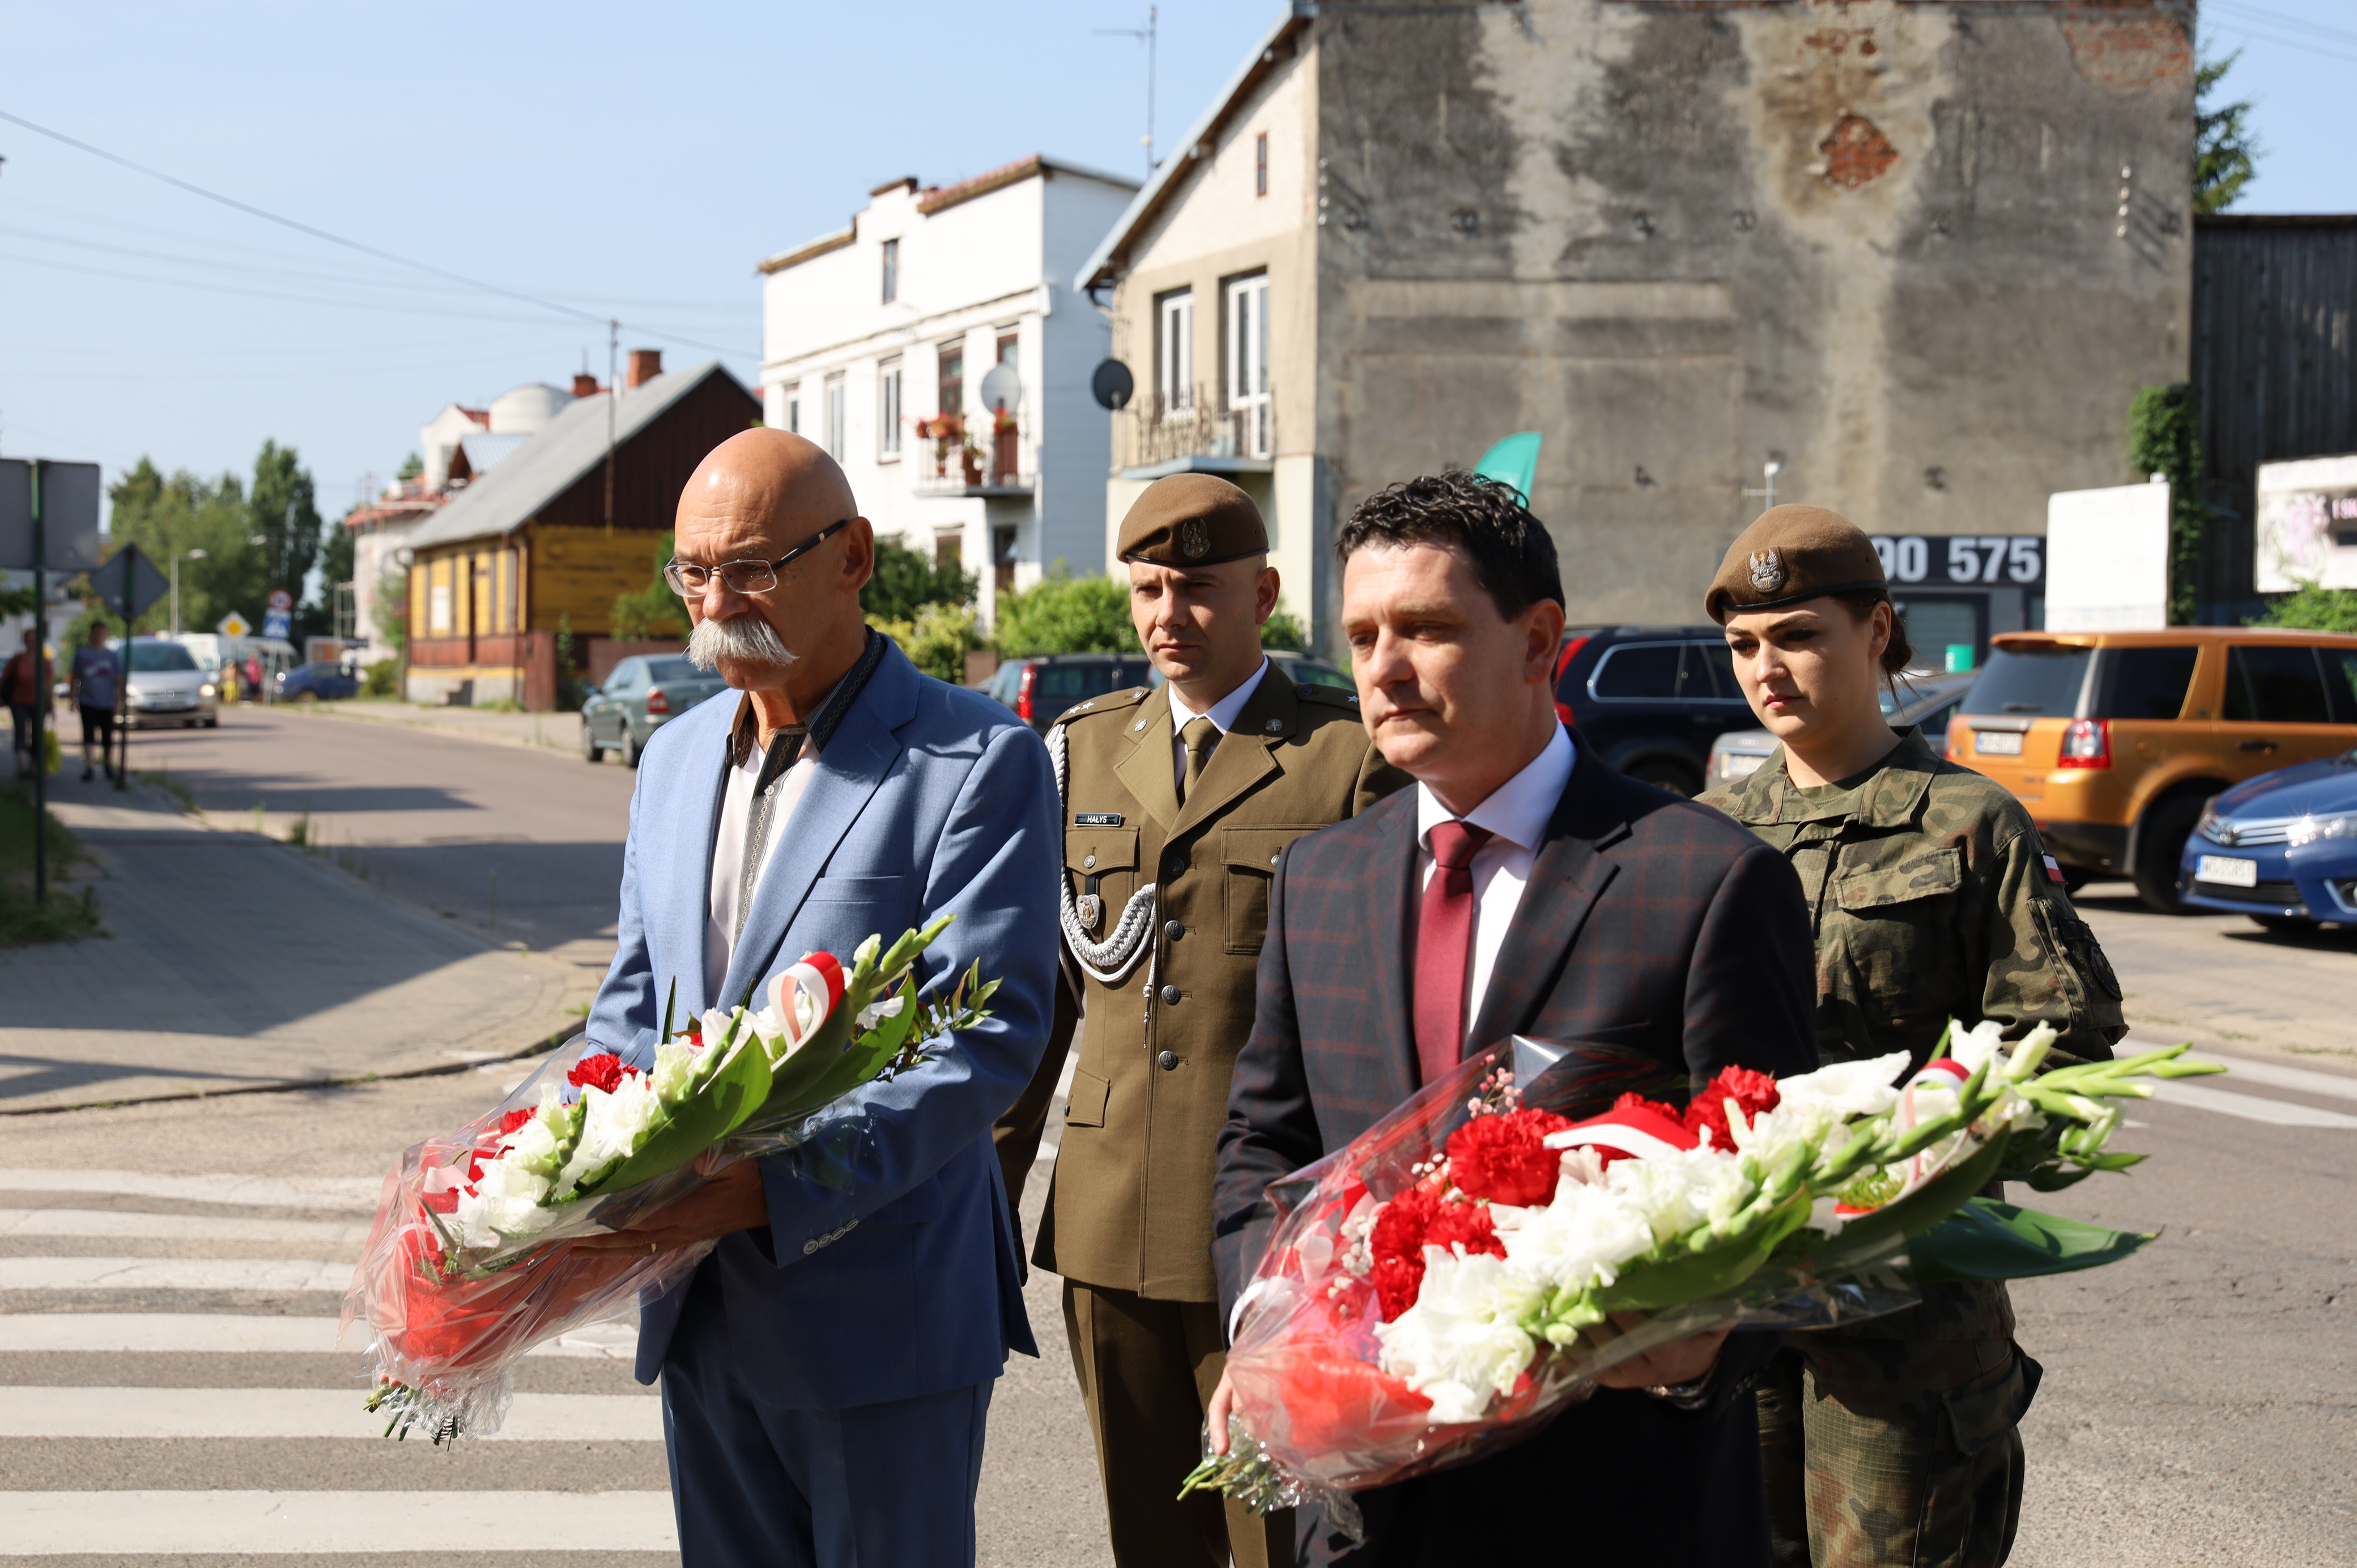 na zdjęciu zastępca burmistrza i starosta powiatu z kwiatami i dwoje żołnierzy z tylu jako delegacja